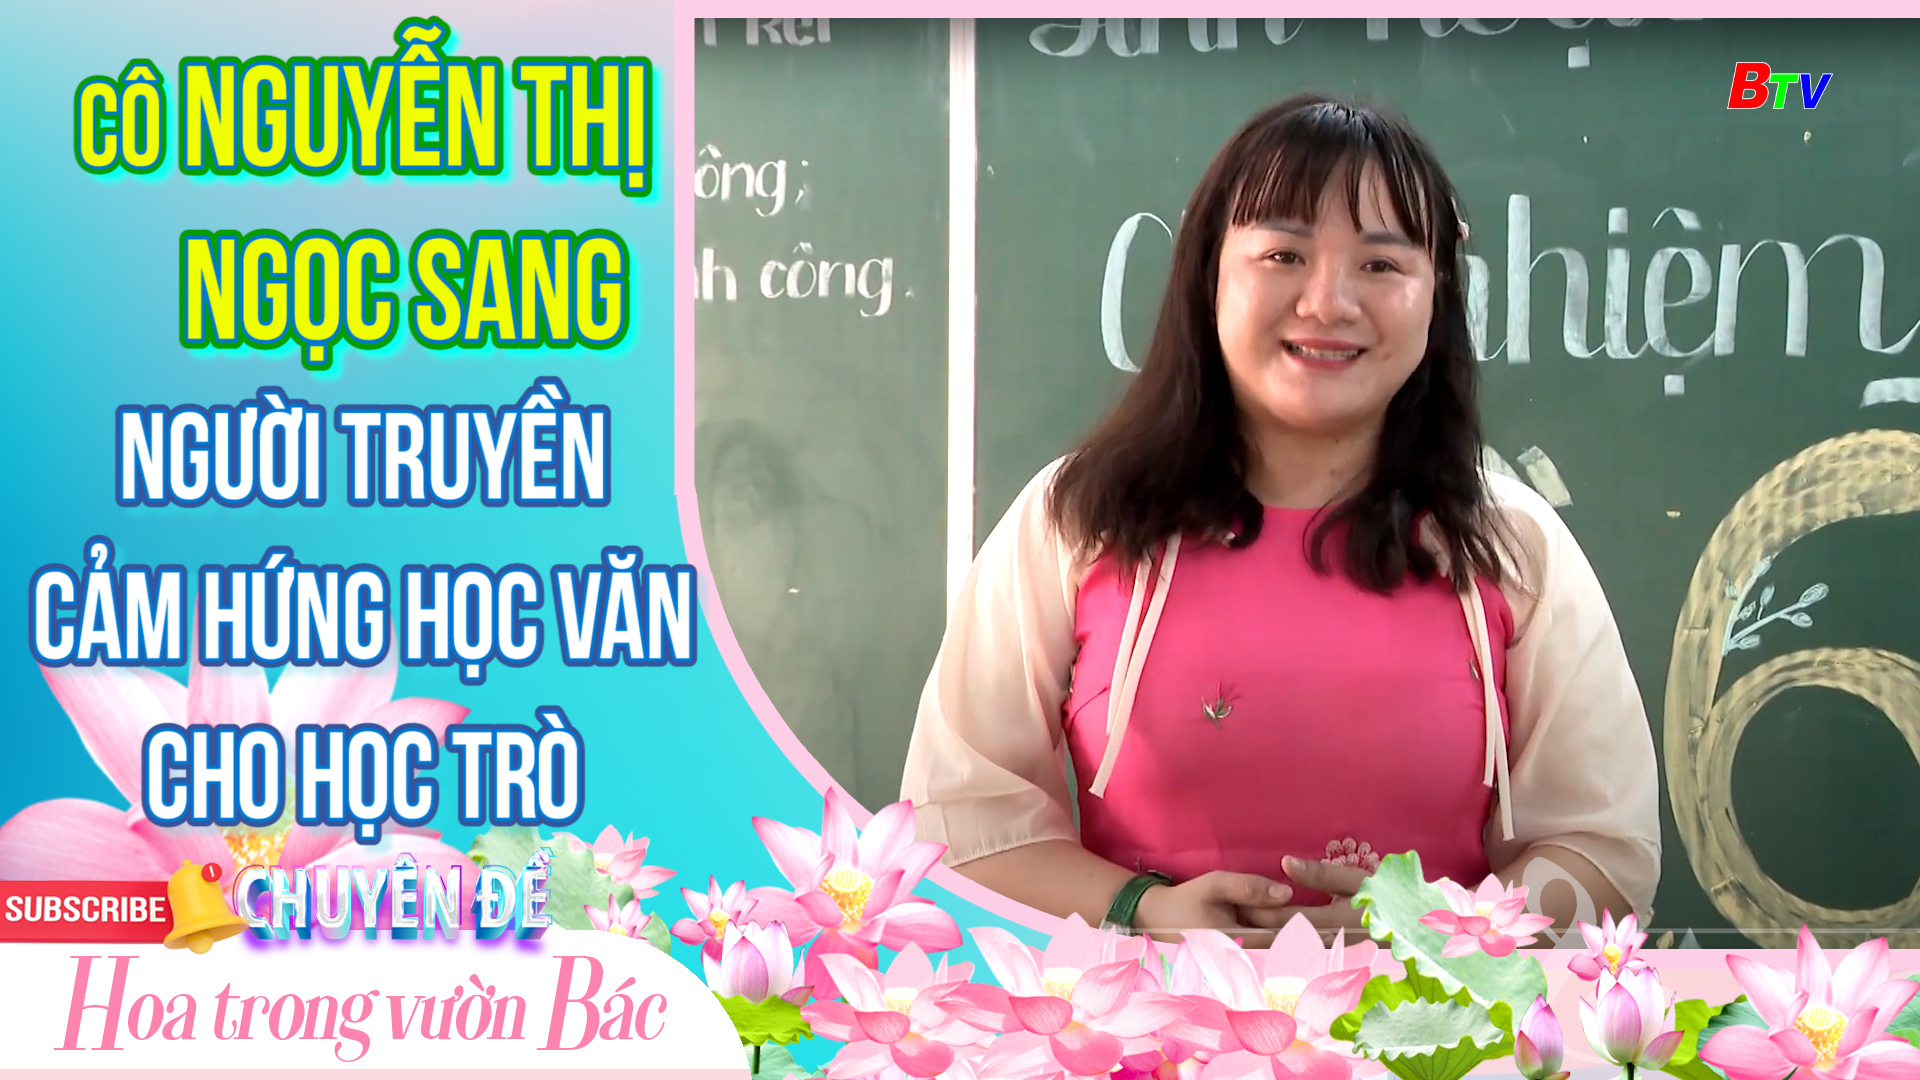 Cô Nguyễn Thị Ngọc Sang - Người truyền cảm hứng học văn cho học trò | Hoa trong vườn Bác